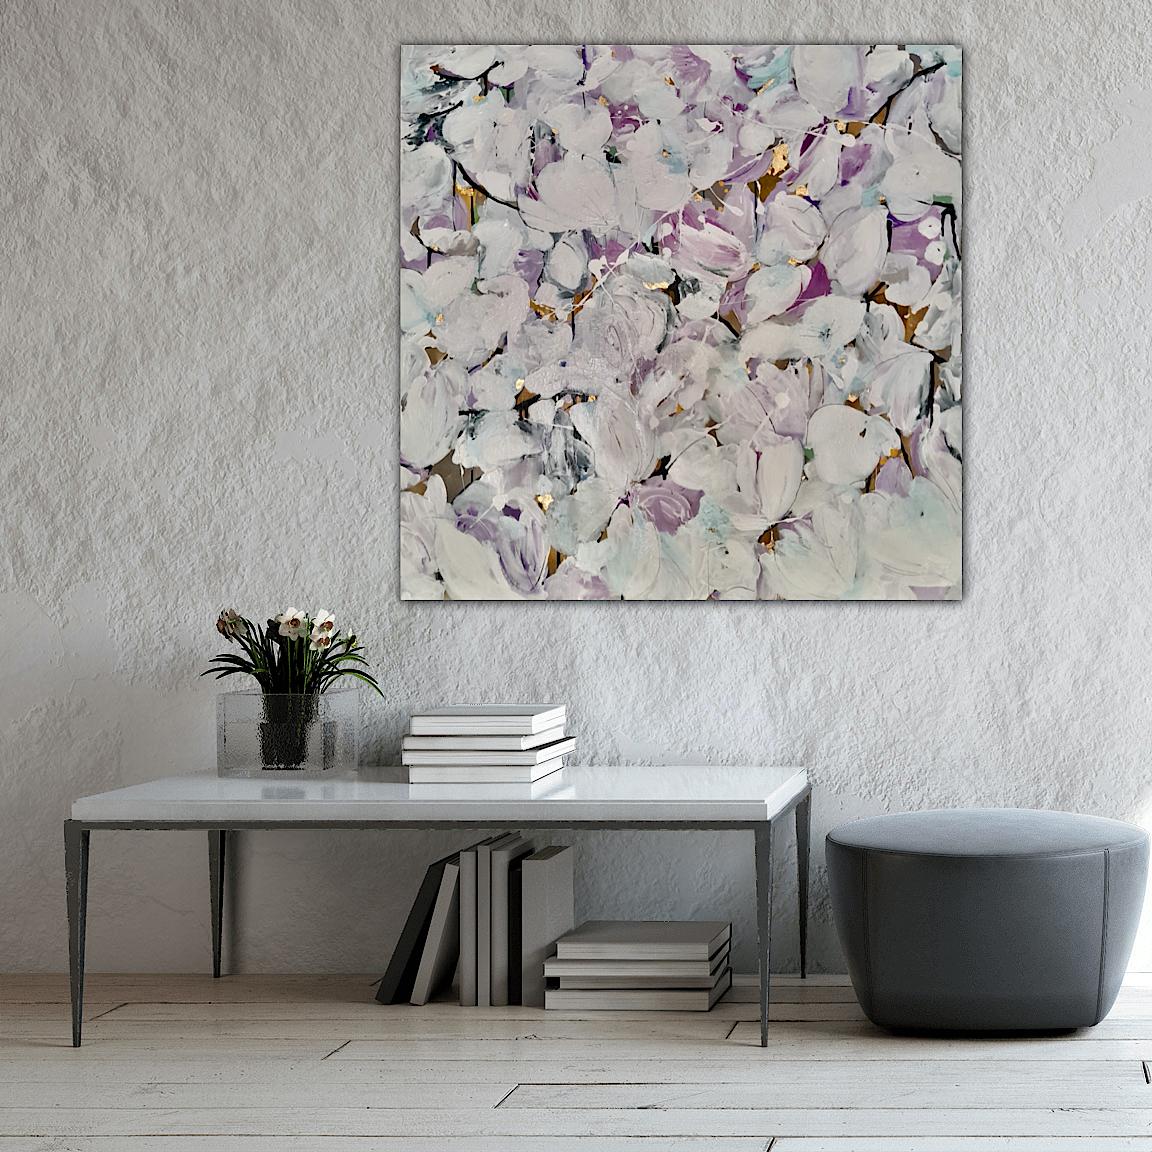 Ich liebe Magnolia Blossom und dies ist eine Hommage an die wundervollen subtilen Violett- und Goldtöne, die man zur Magnolienblütenzeit bekommt. Ich habe mit den fabelhaften Formen und der Struktur der Blume gespielt, indem ich eine Farbe verwendet